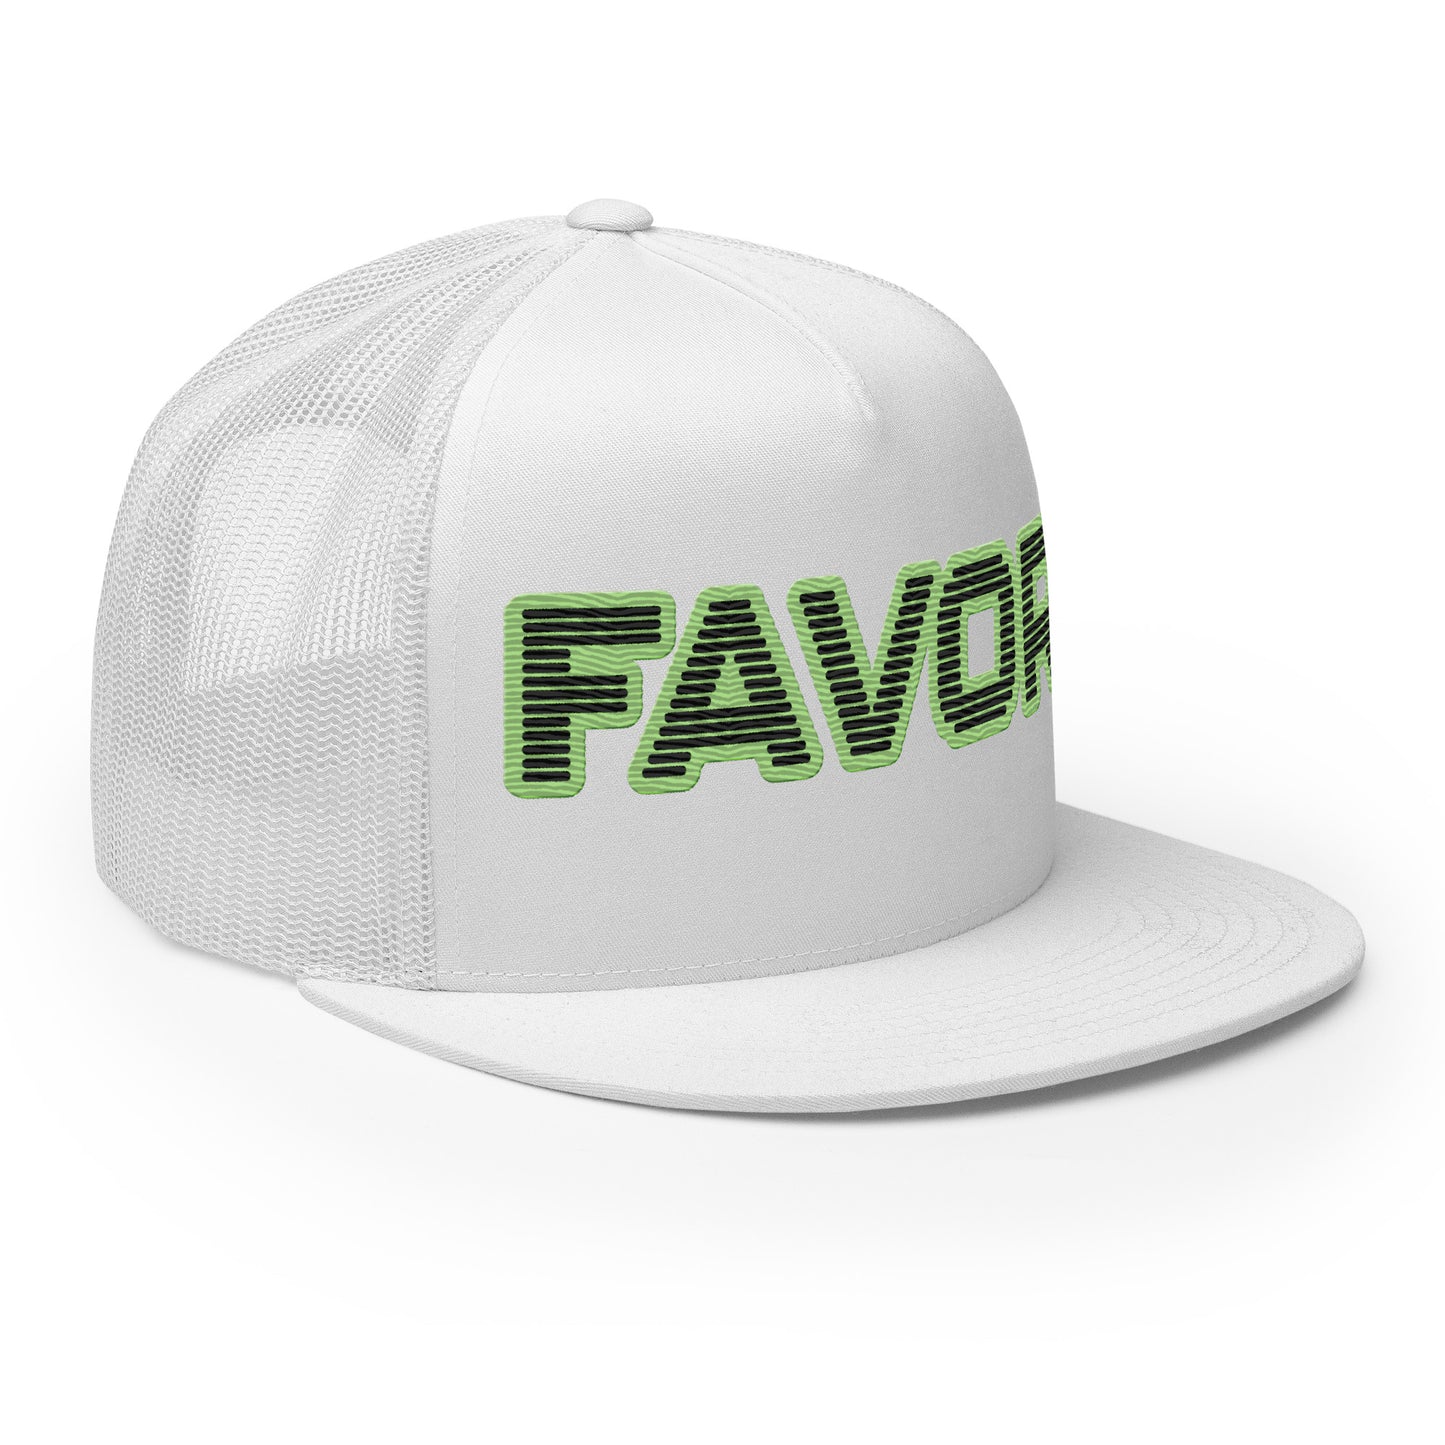 FAVOR- Trucker Cap